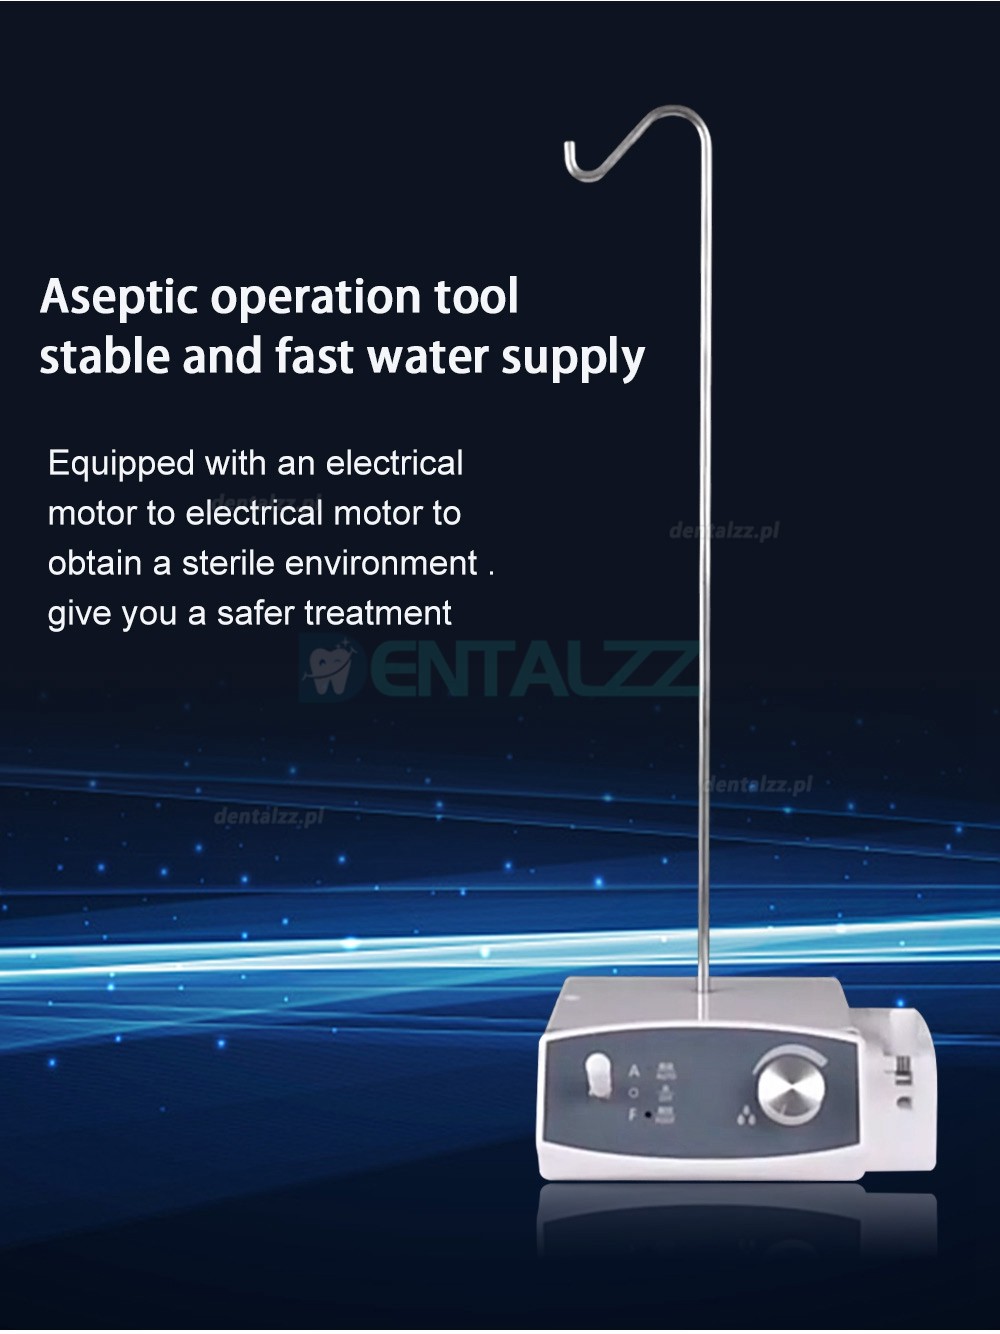 COXO CX265-76 Inteligentna pompa perystaltyczna do automatycznego zaopatrzenia w wodę z silnikiem elektrycznym dentystycznym